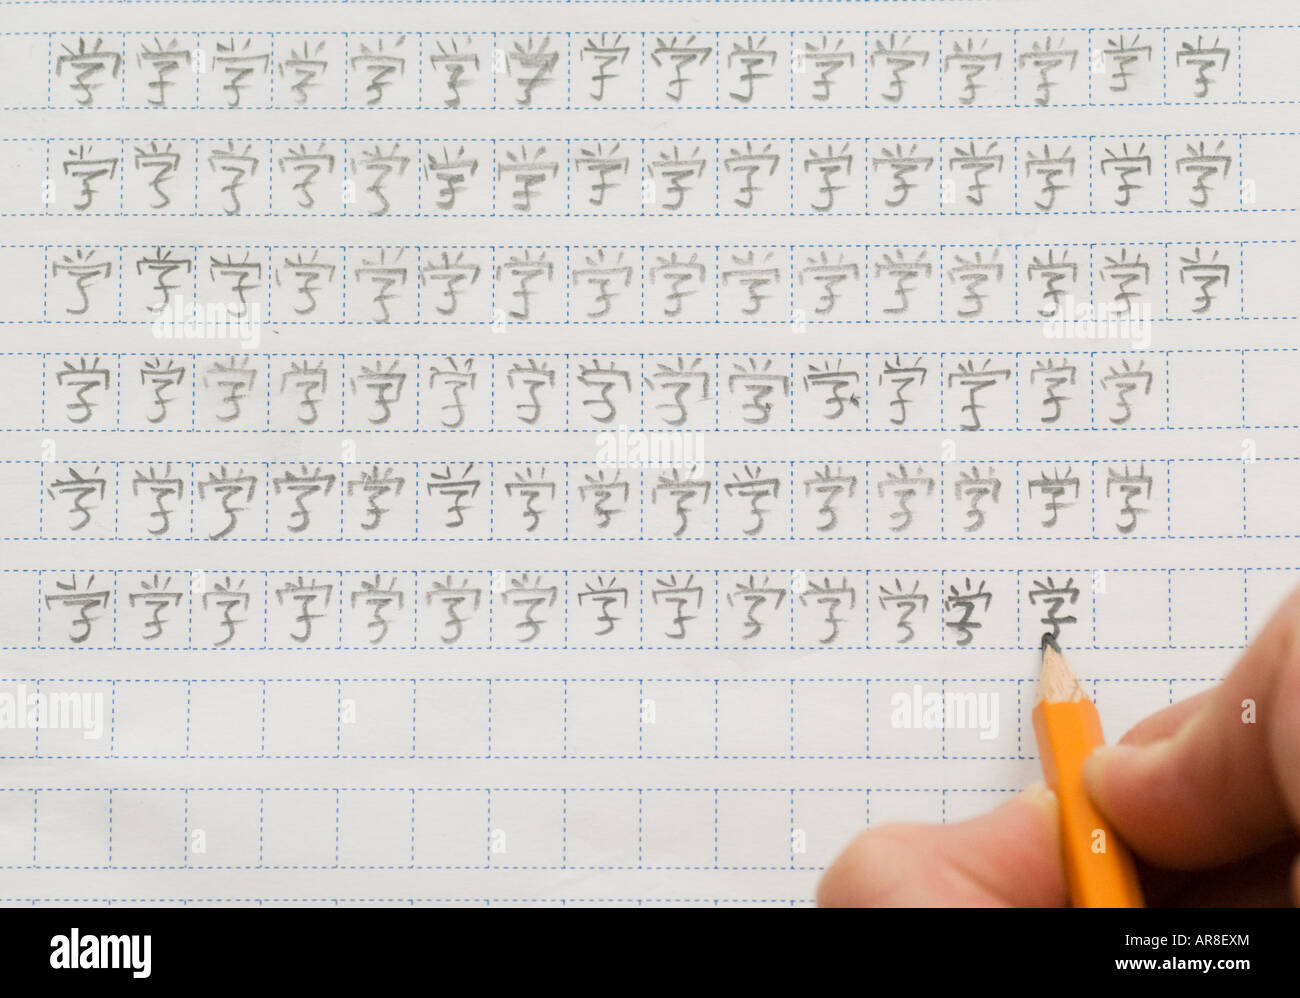 Ausländischer Student chinesische Schriftzeichen durch Wiederholung mit  Bleistift und Karopapier schreiben lernen Stockfotografie - Alamy